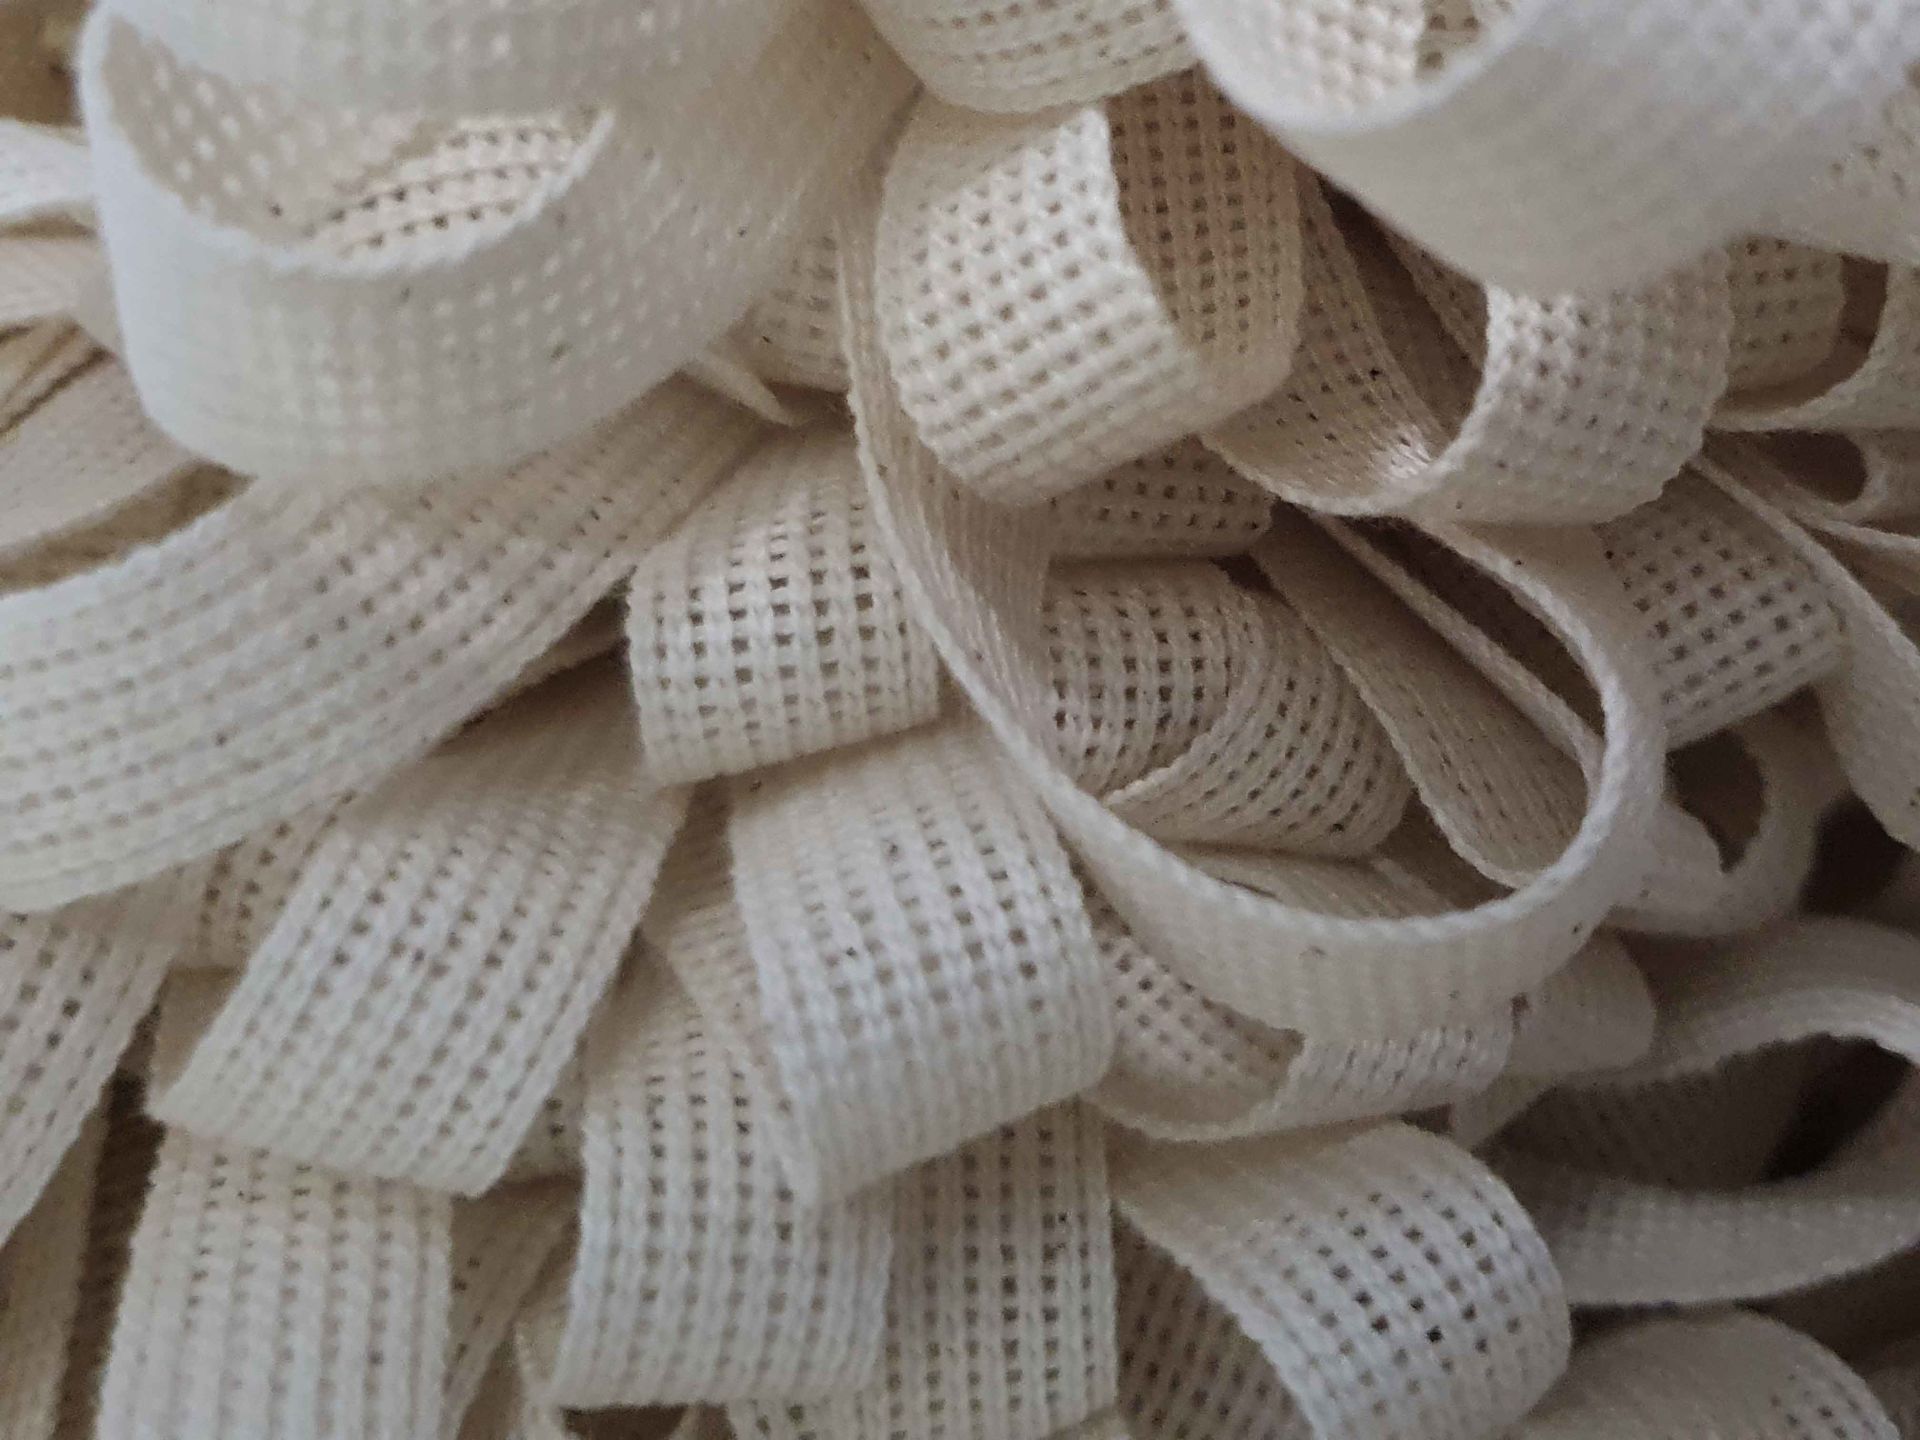 Baumwollband  -  Bindeband  -  16 mm  -  25 Meter  -  rohweiß-natur  -  Zum Verpacken und Dekorieren